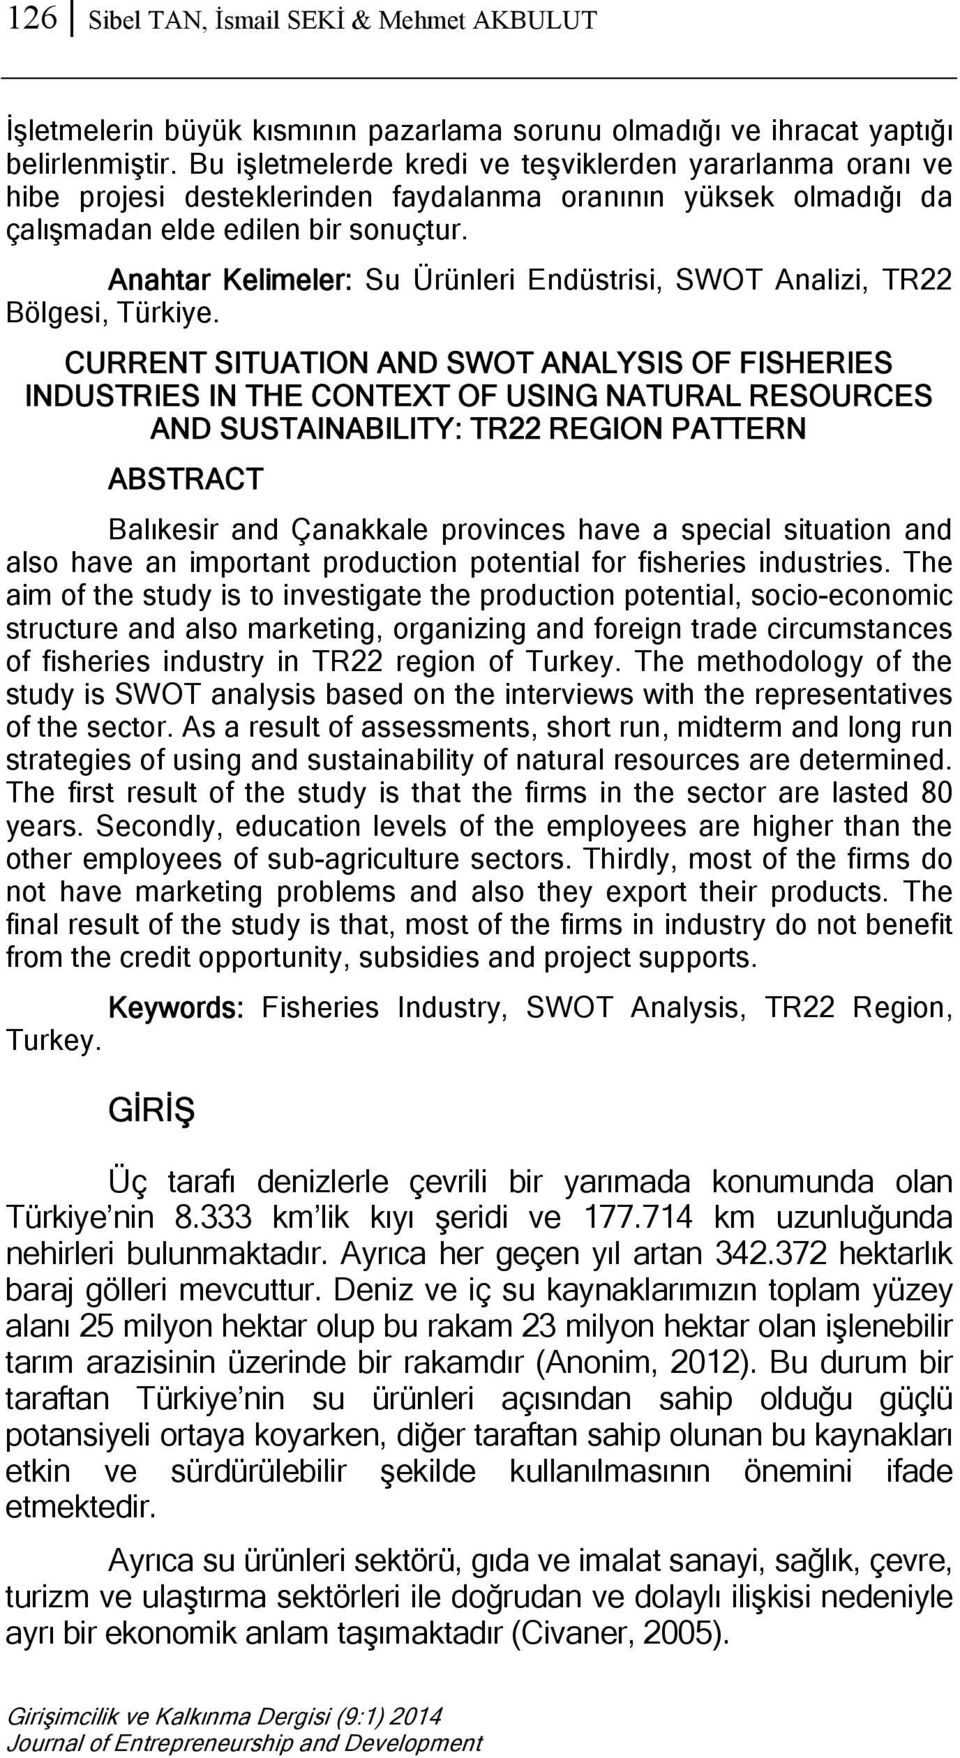 Anahtar Kelimeler: Su Ürünleri Endüstrisi, SWOT Analizi, TR22 Bölgesi, Türkiye.